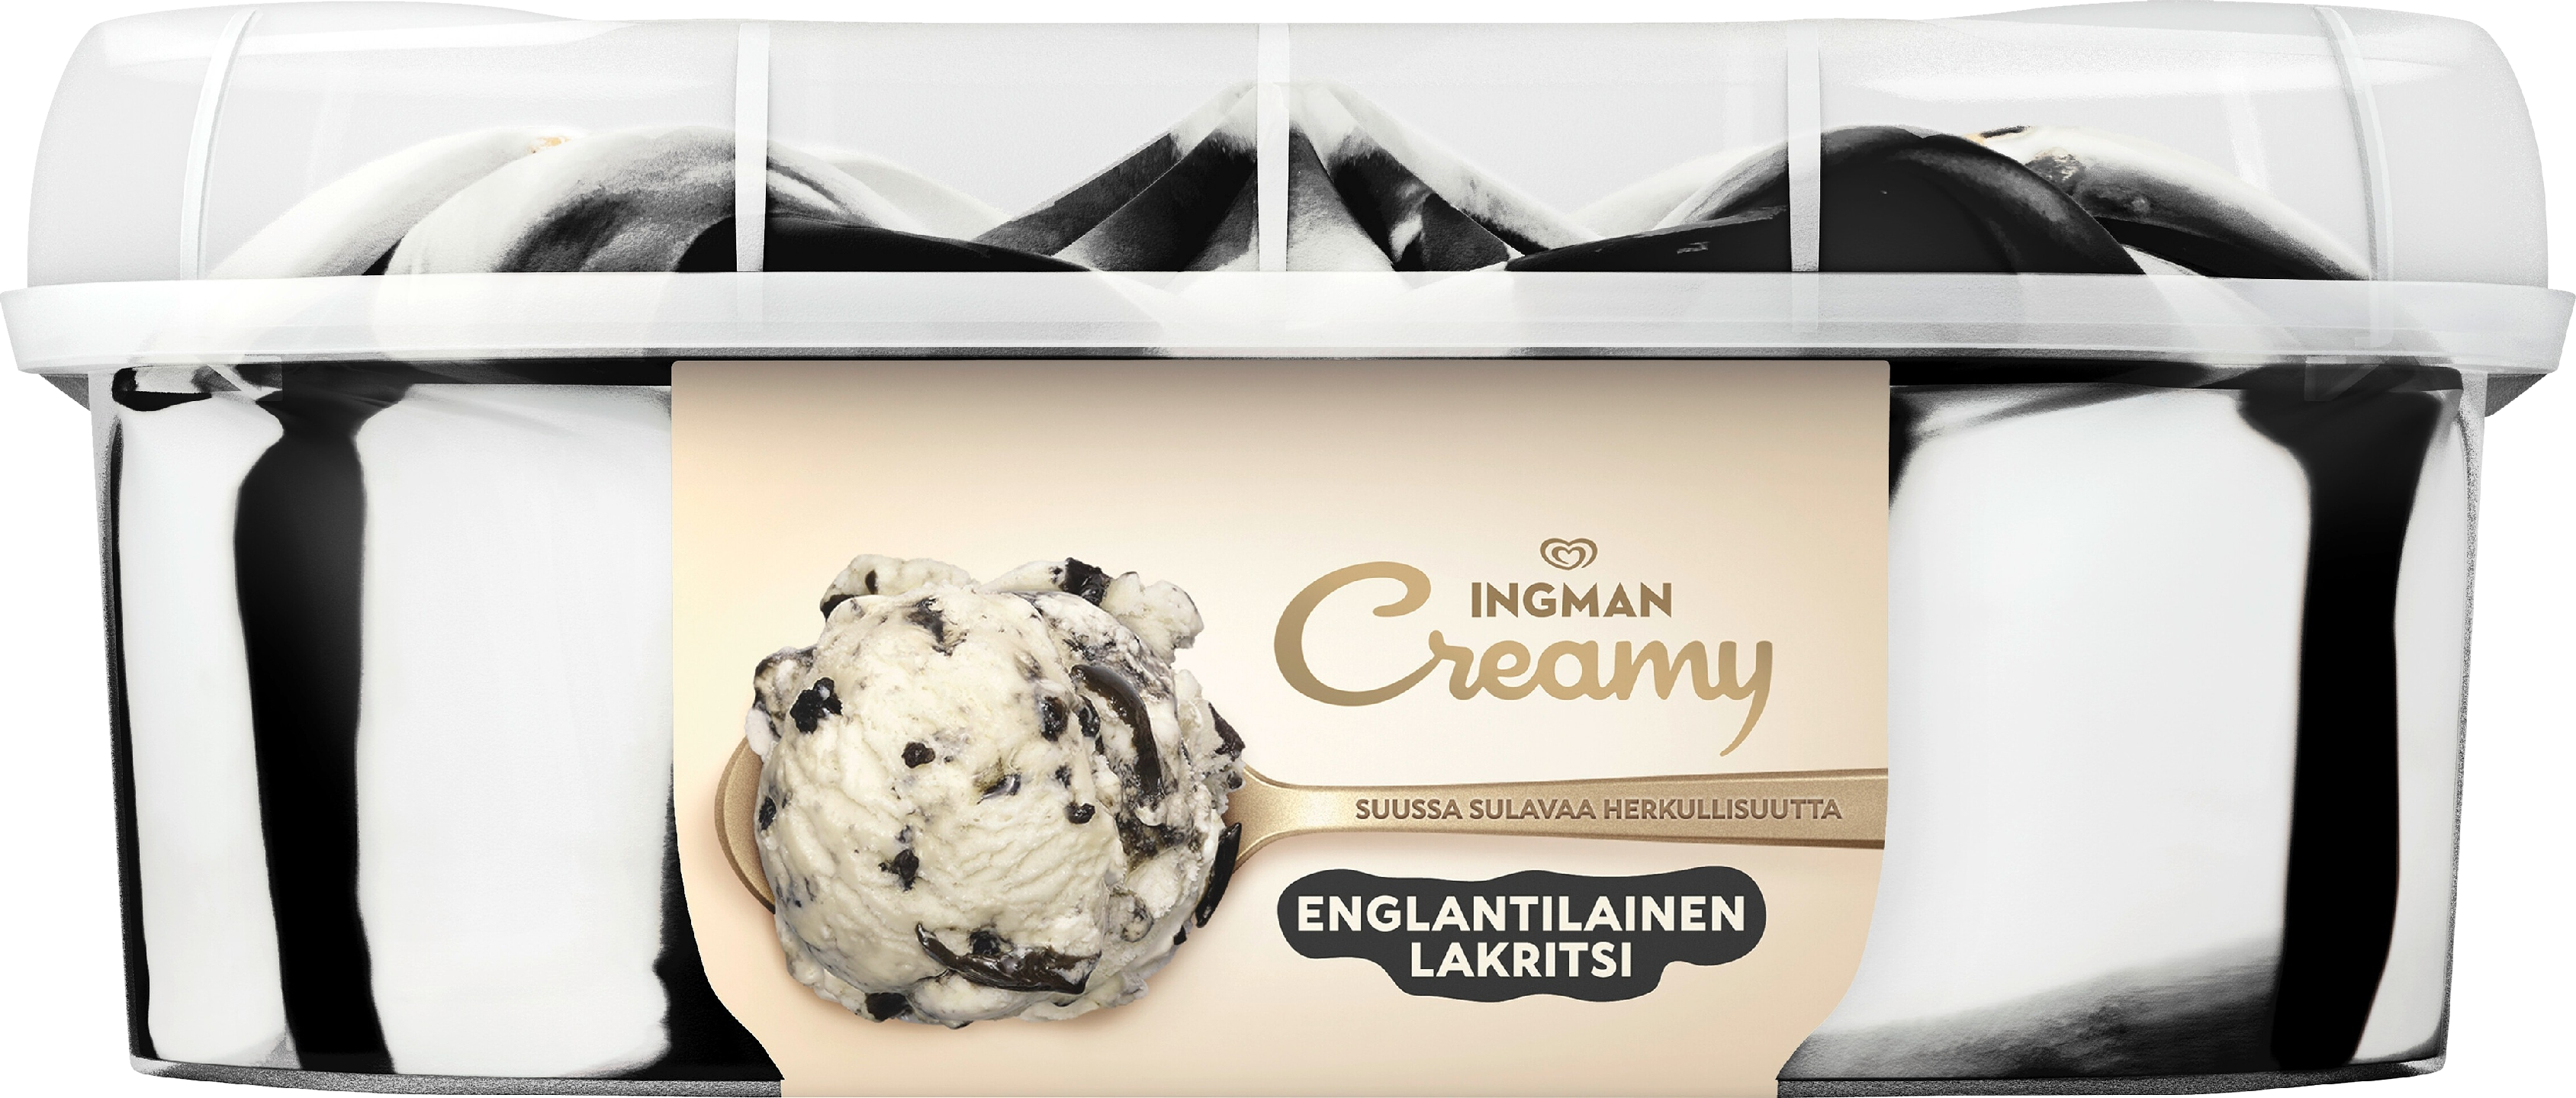 Ingman Creamy 0,85L Englantilainen lakritsi jäätelö